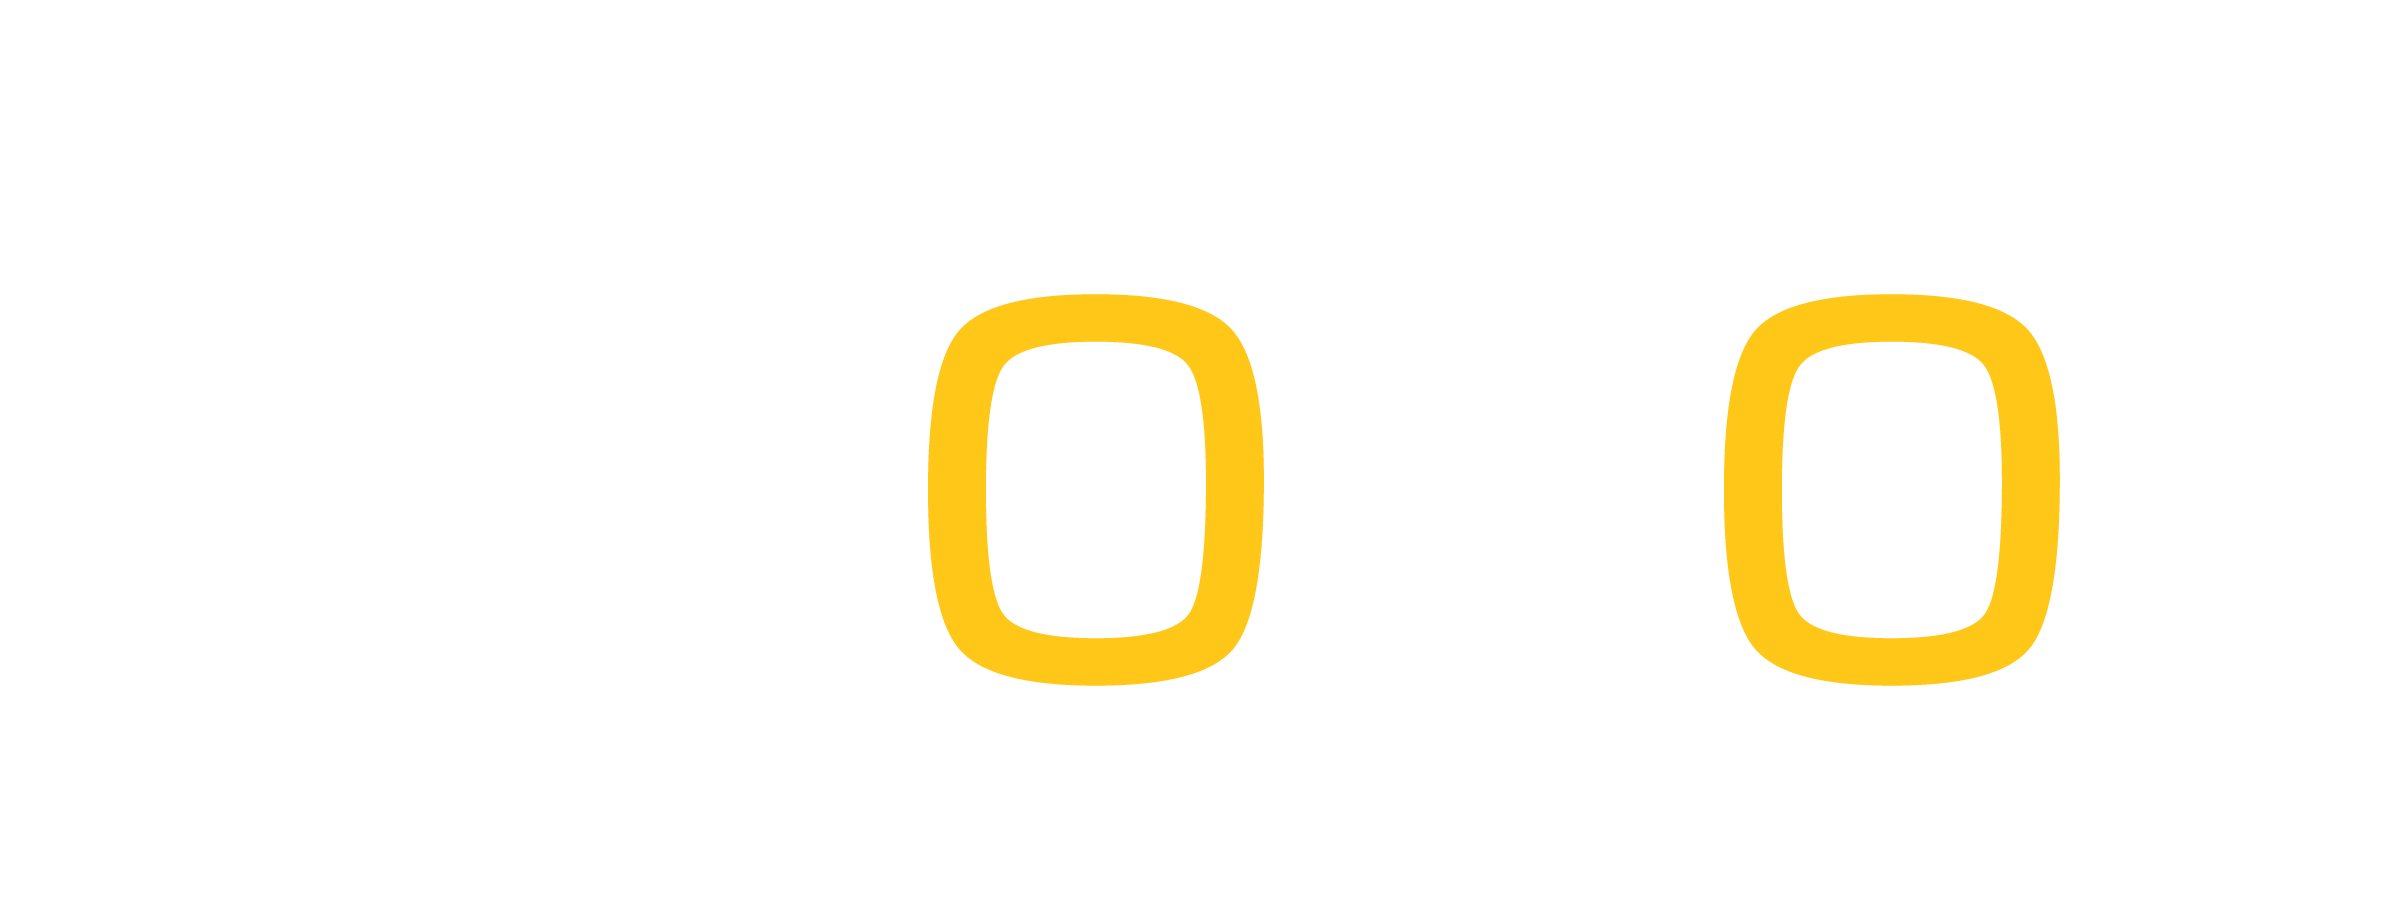 xeosol norway